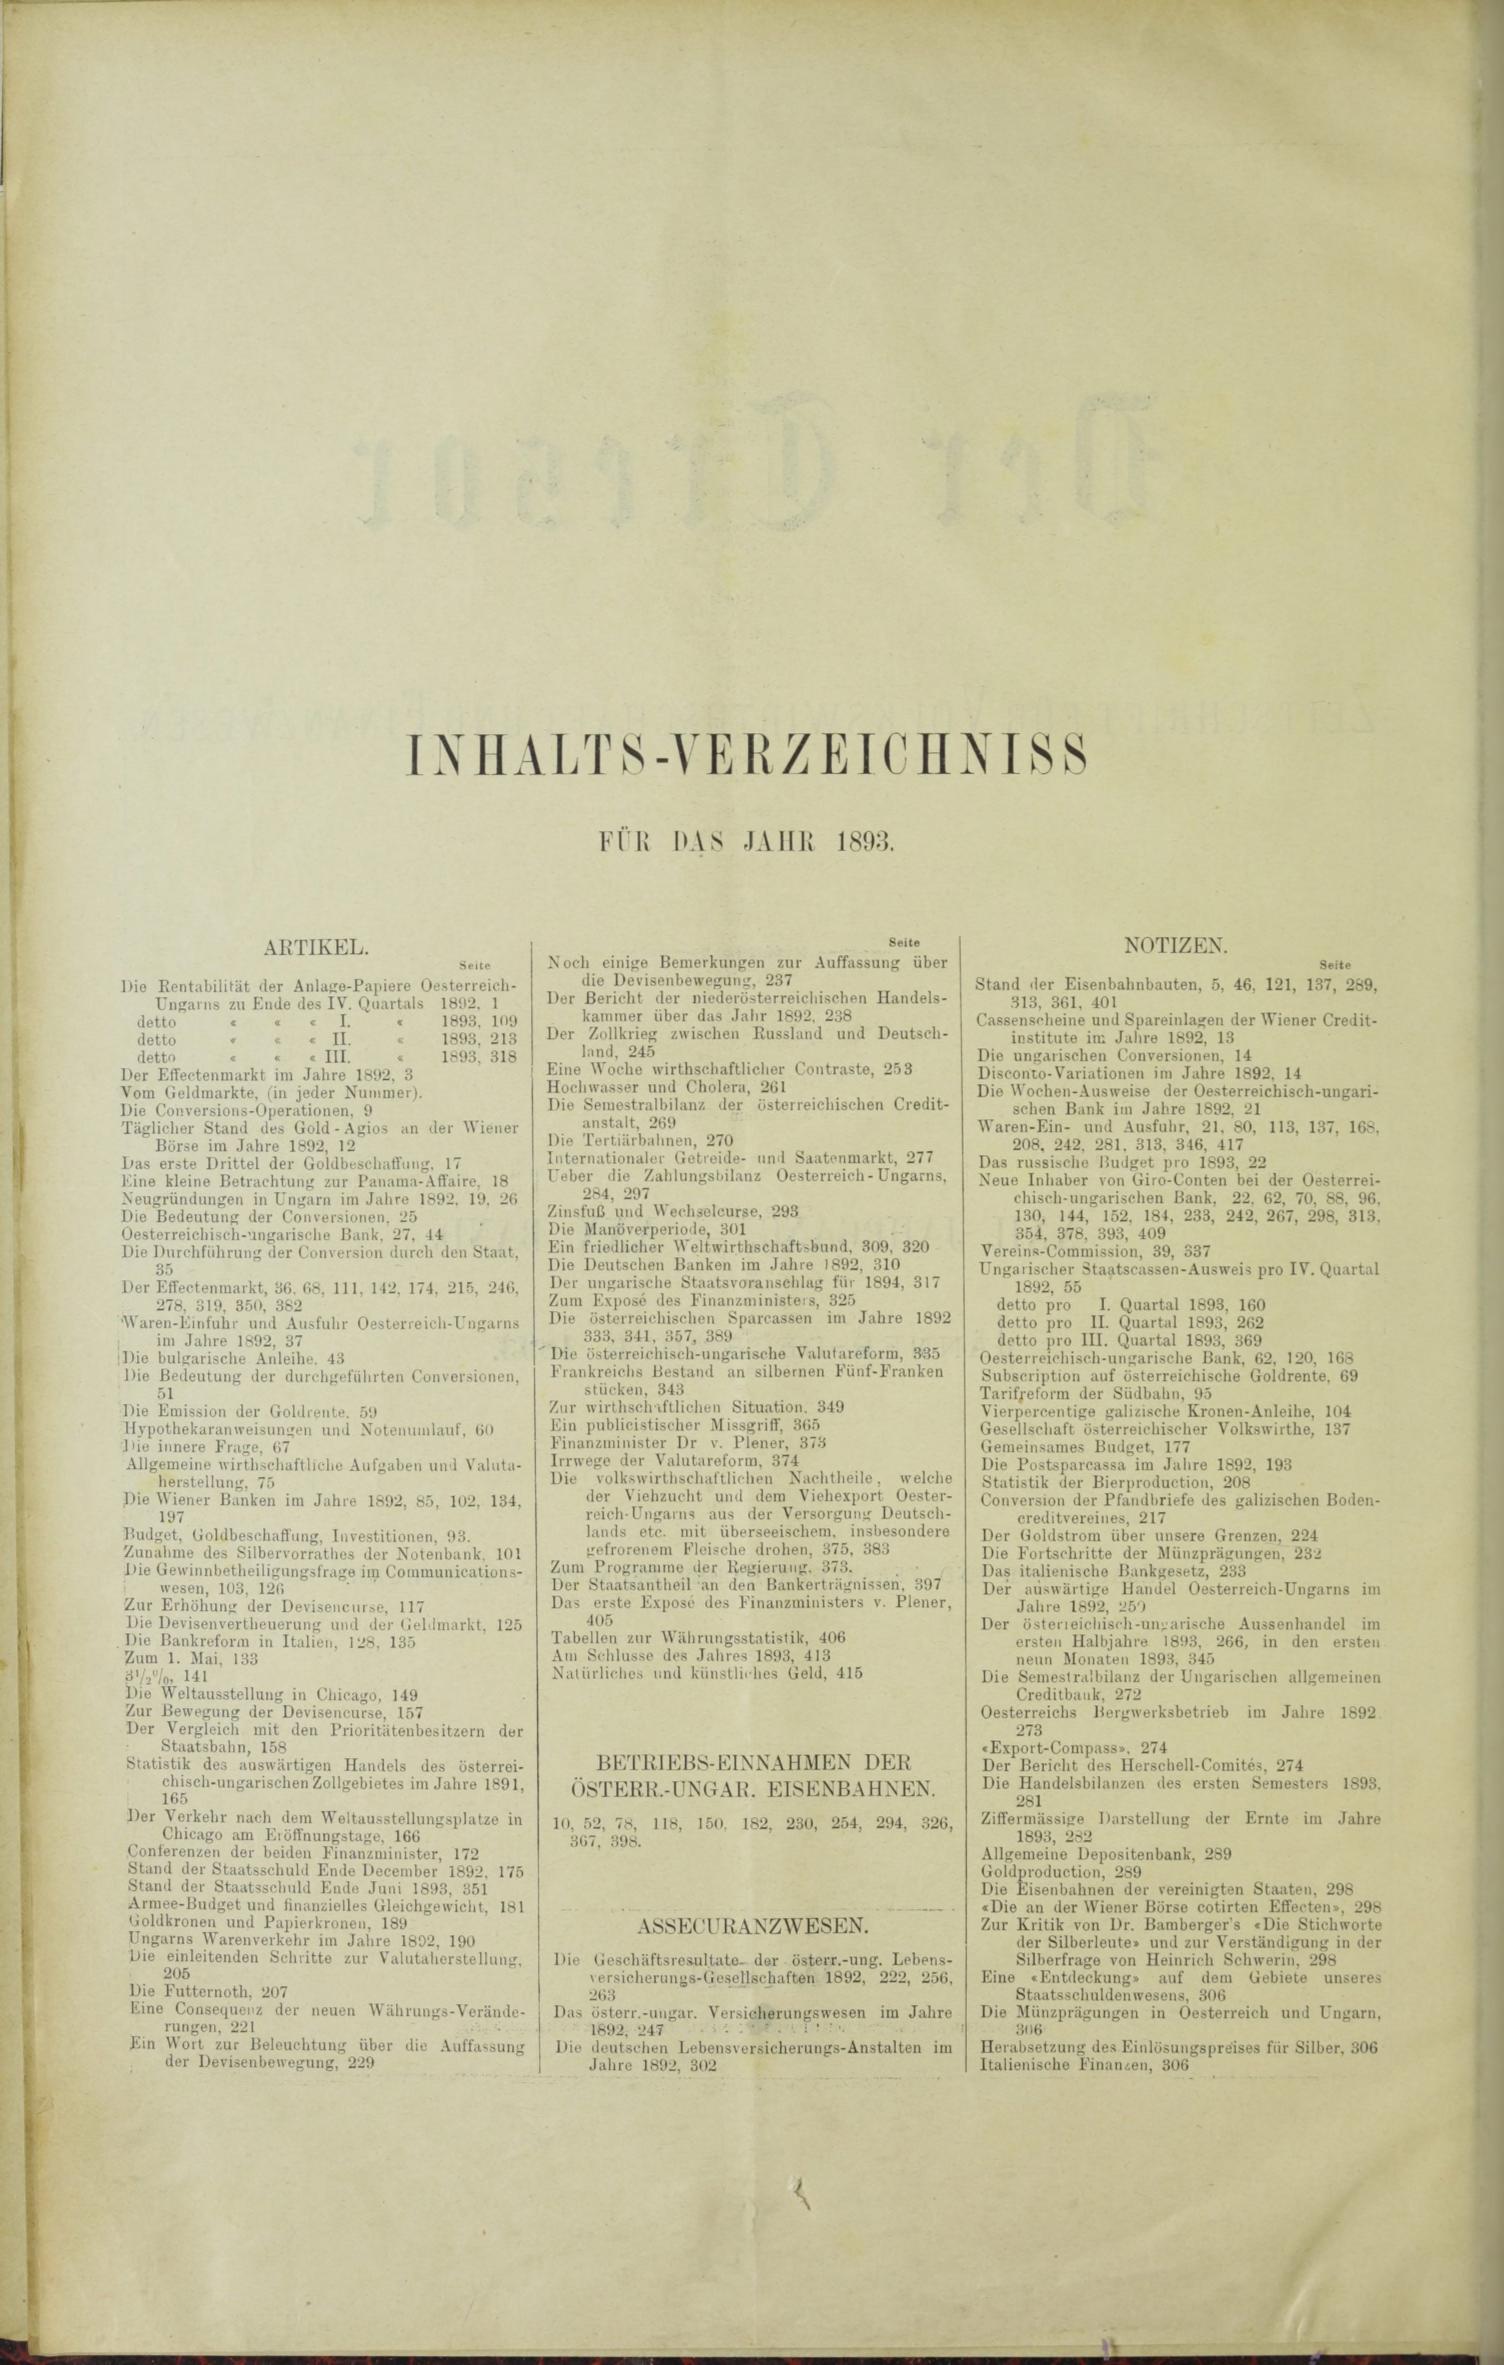 Der Tresor 26.01.1893 - Seite 12